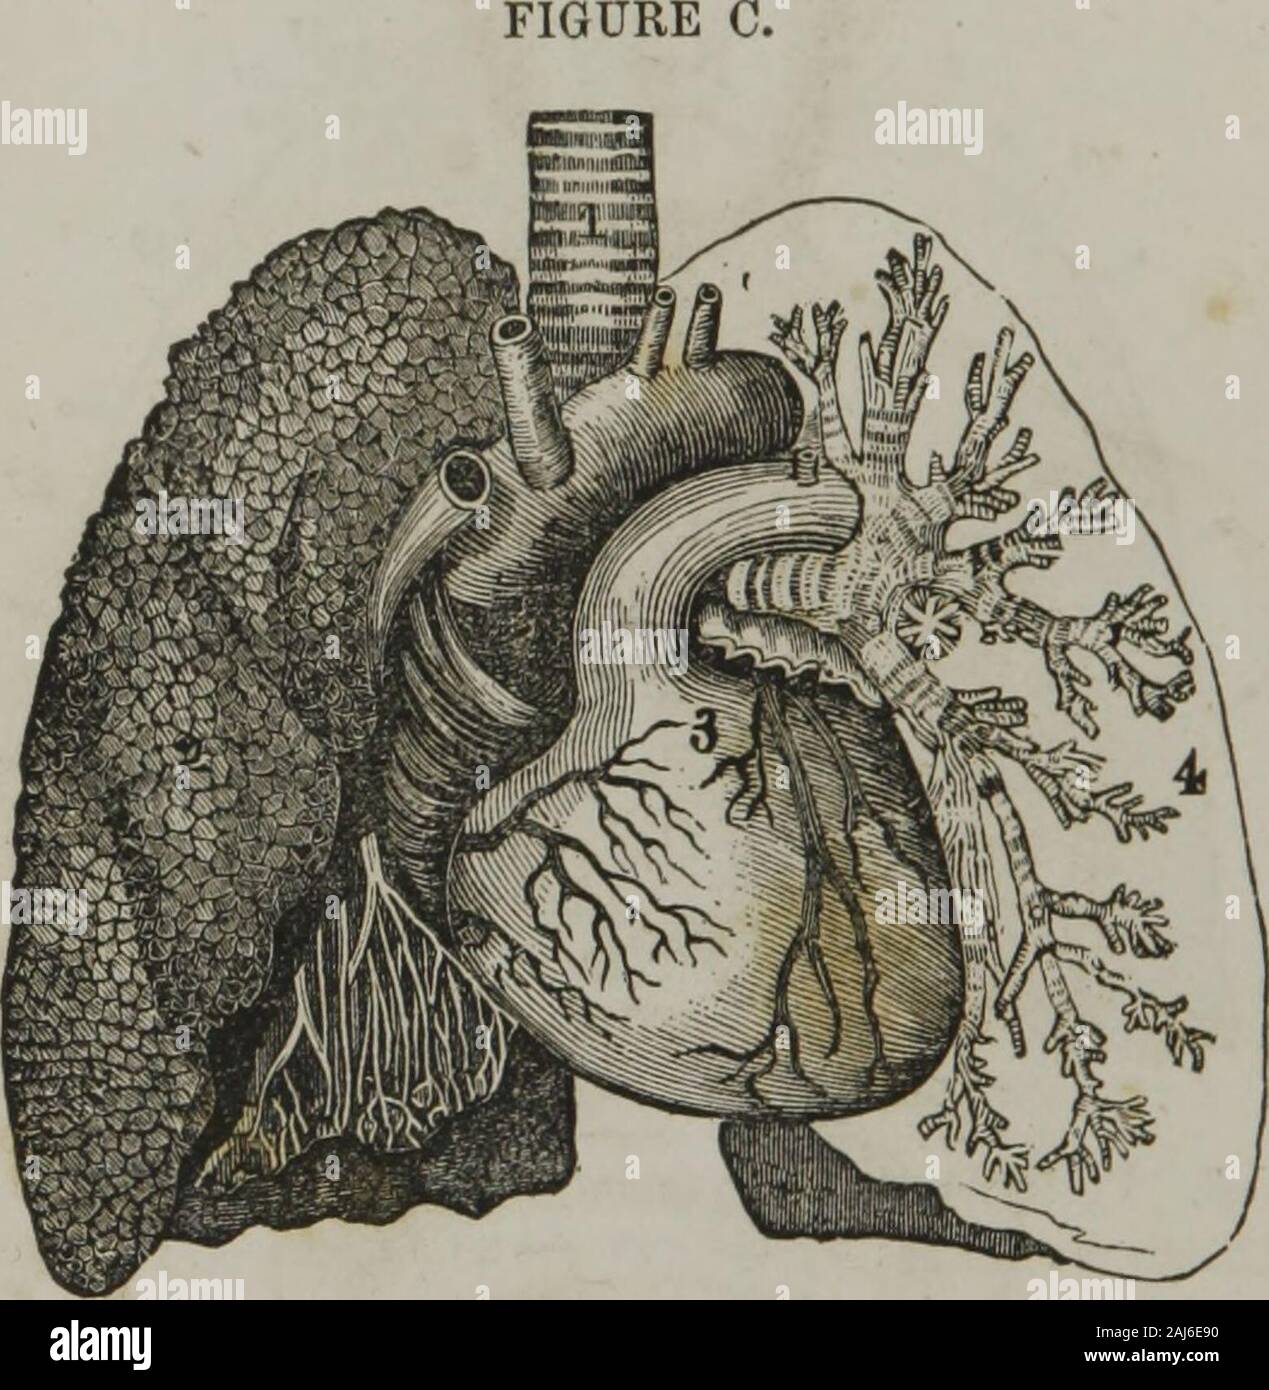 Patologia popolari : Pancoast sulla curabilità di consumo : inalazione medicato . Bourgery Prom. Fie/. B. Vista posteriore della laringe, trachea, polmoni e cuore.1, epiglottide cartilagine; 2, obliquo arytenoid muscolo ; 3, posteriorcrico-arytenoid muscoli; 4 trachea con la sua follicoli delle mucose ; 5, 6,a destra e a sinistra dei bronchi; 7, 8, 9, i lobi di destra dei polmoni; 10, 11,sinistra lobi; 12,12, base dei polmoni; 13, cuore; 14, aorta; 15,arteria succlavia sinistra; 16, sinistra carotide primitiva ; 17, destra primitivecarotid; 18, destra arteria succlavia; 19, vena cava descendens ; 20,destra vena innominata ; 21, ri Foto Stock